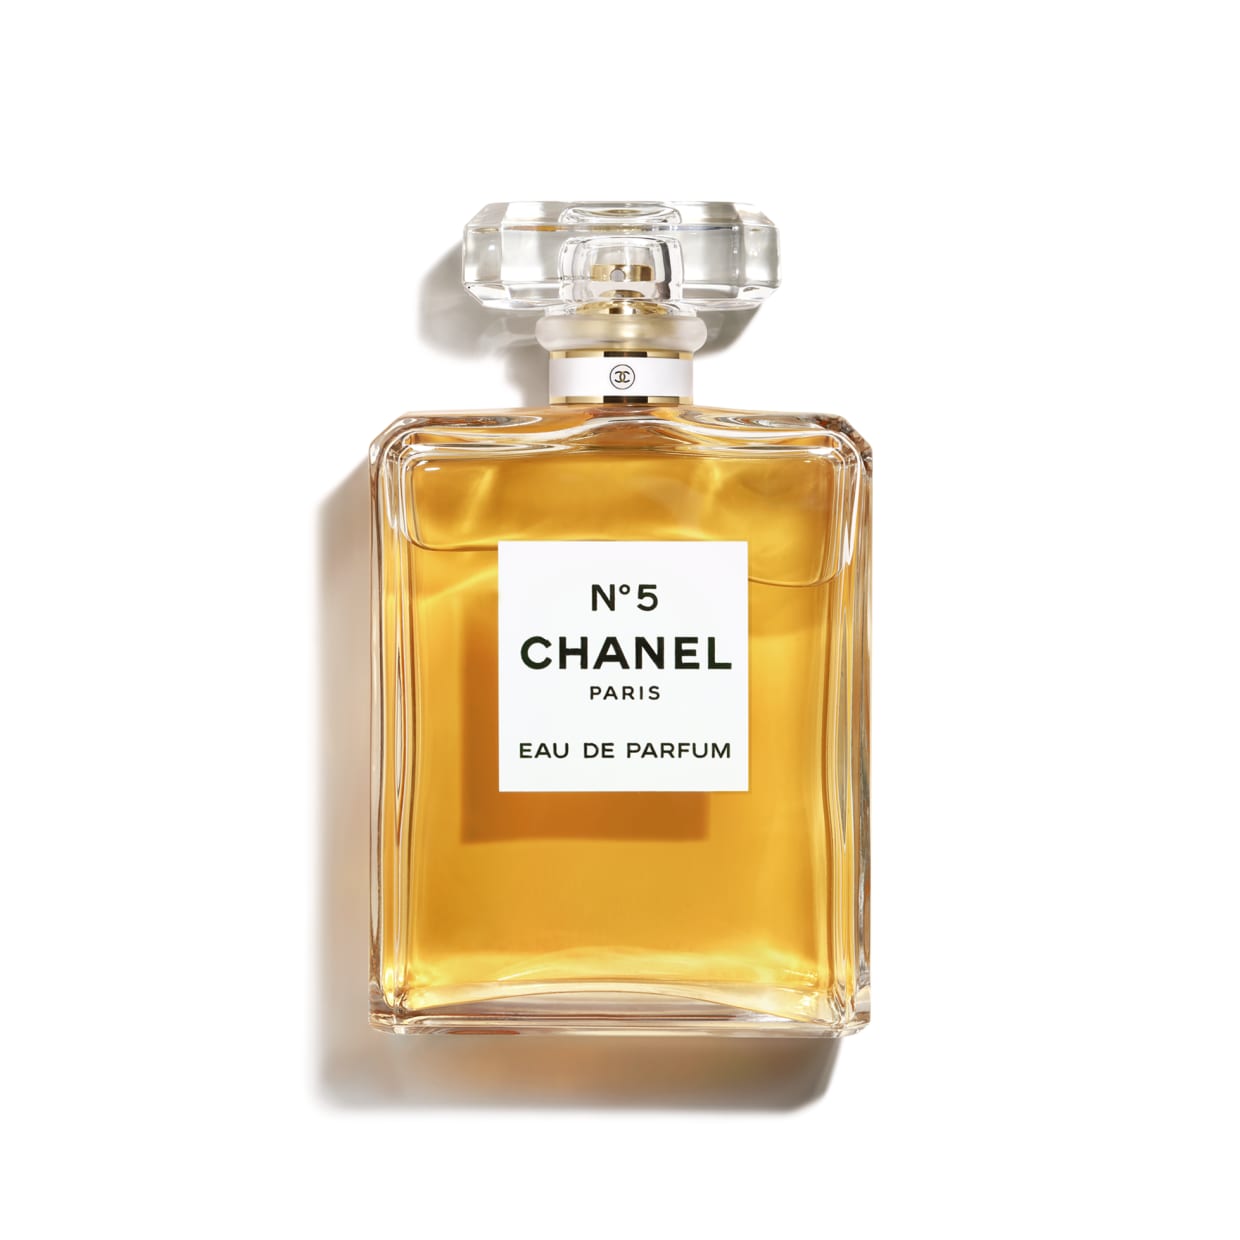 Chanel no 5 |Eau de Parfum Spray